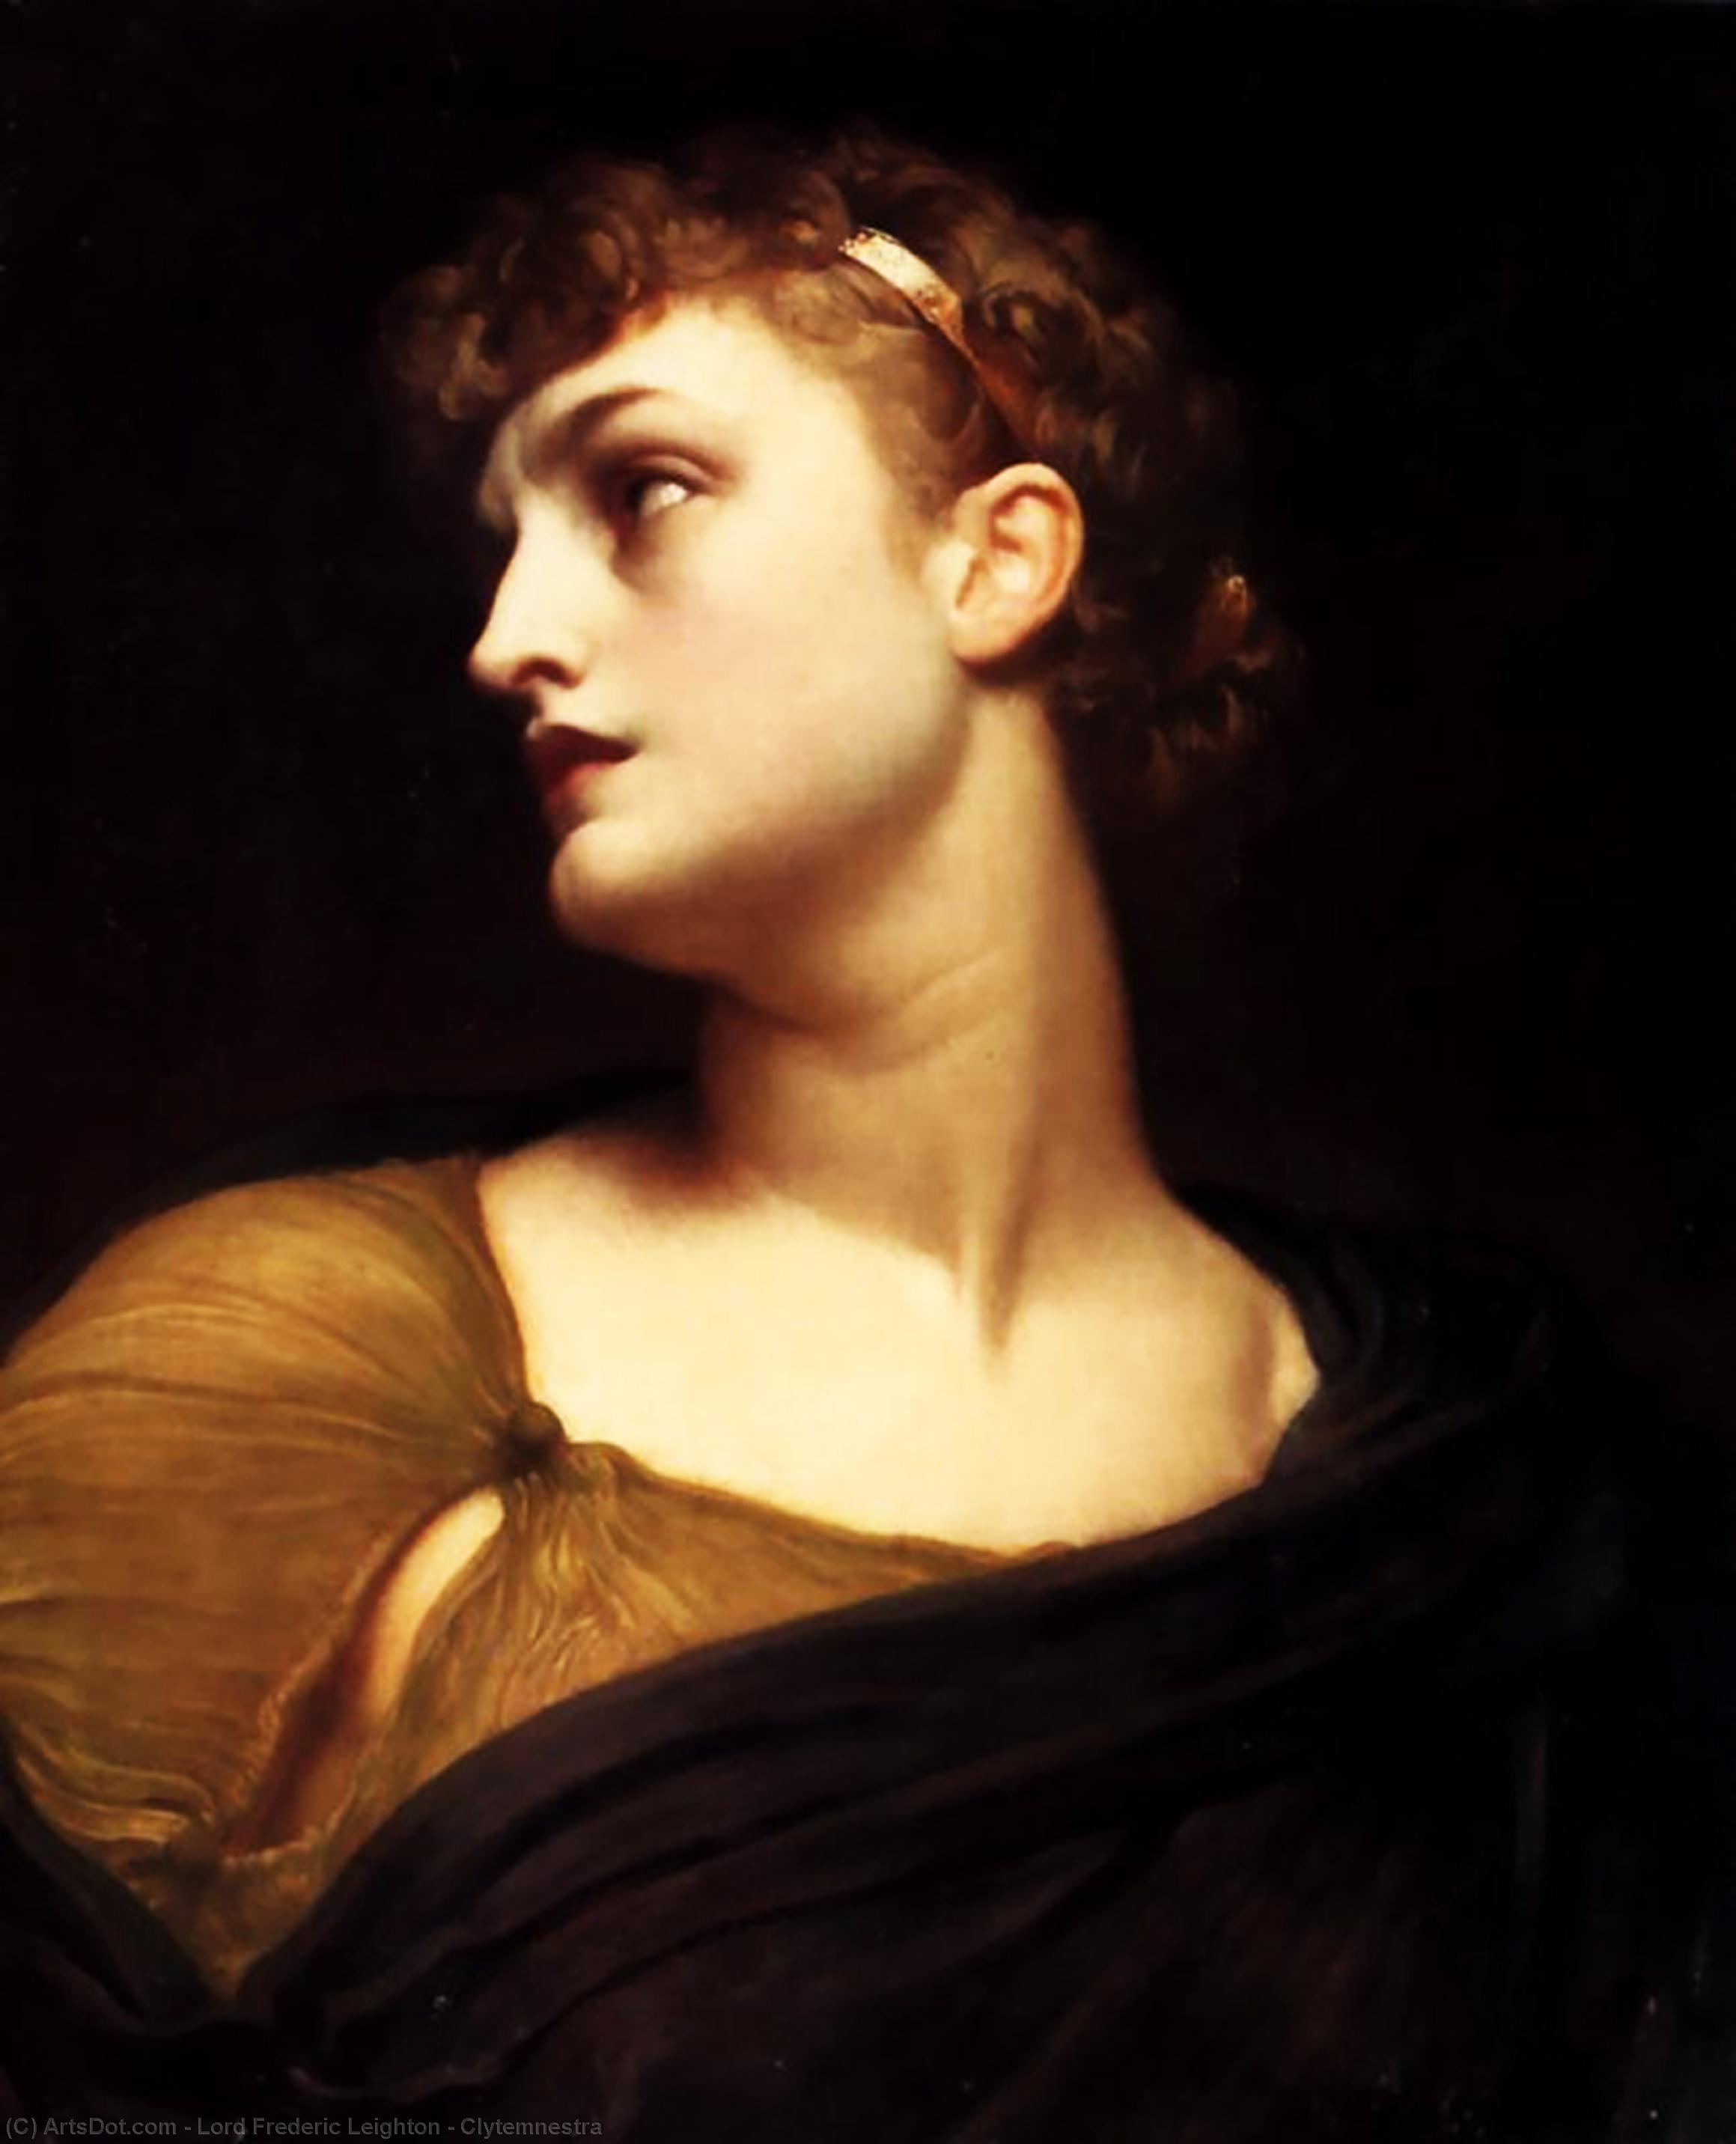 WikiOO.org - Enciclopédia das Belas Artes - Pintura, Arte por Lord Frederic Leighton - Clytemnestra